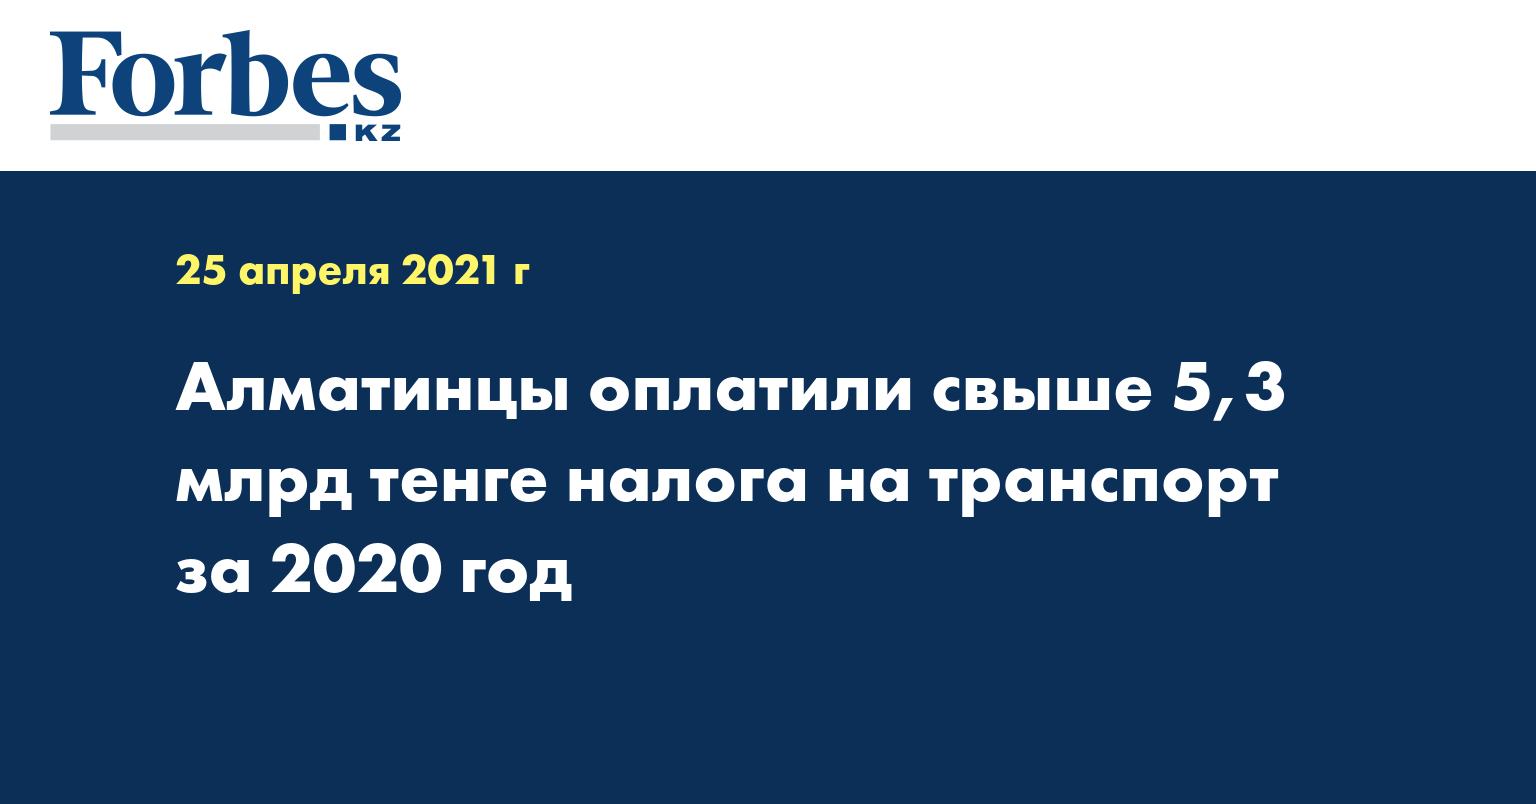 Алматинцы оплатили свыше 5,3 млрд тенге налога на транспорт за 2020 год